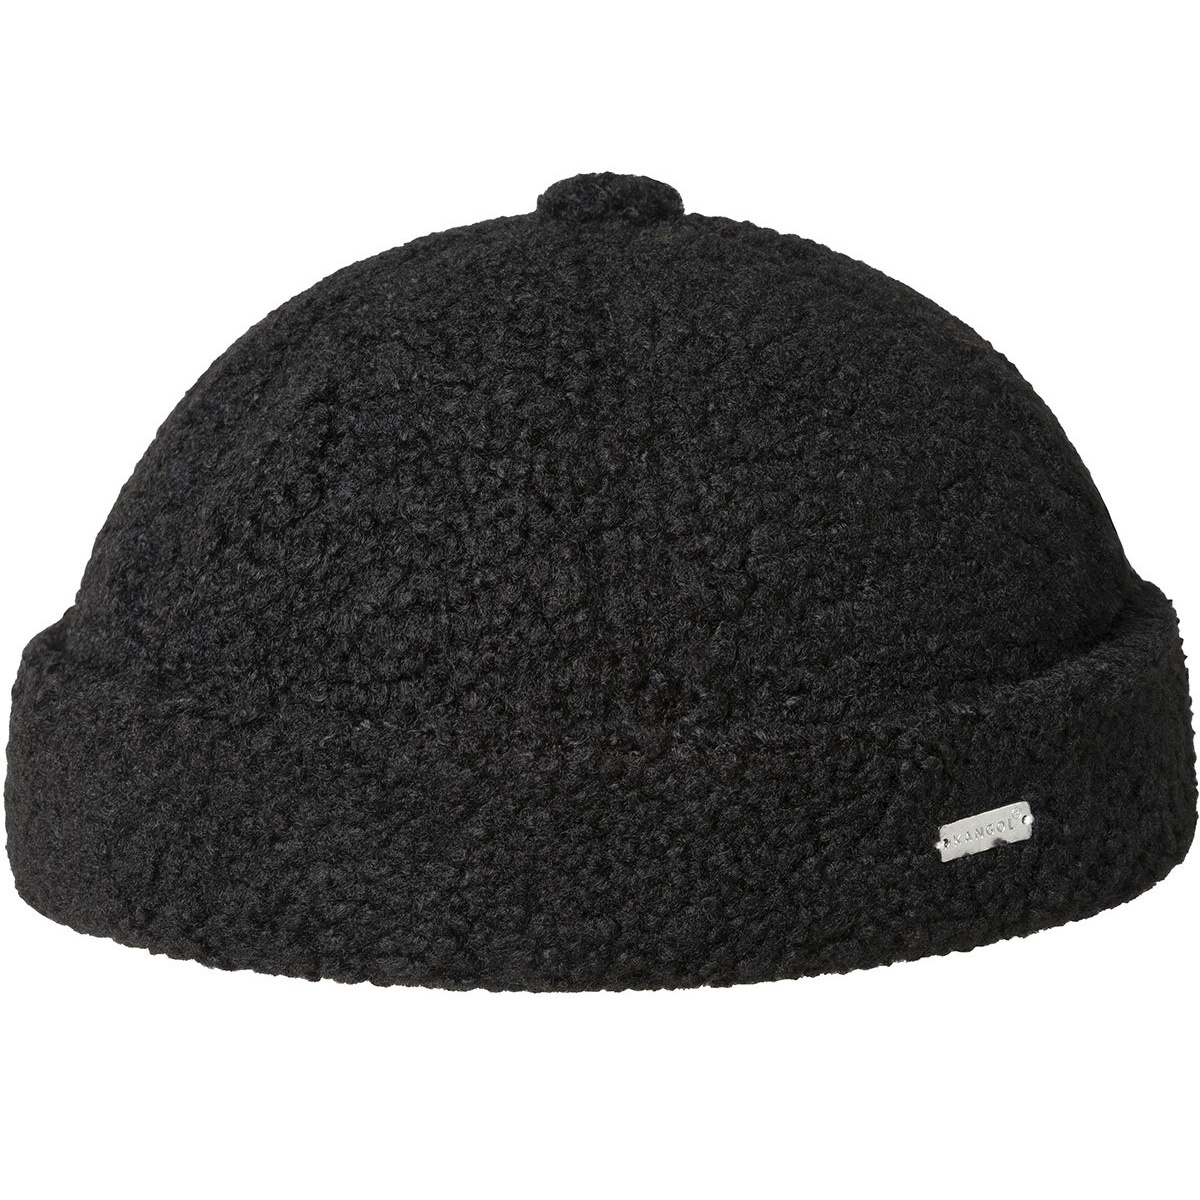 L'incontournable accessoire Breton - LE bonnet marin Miki en coton